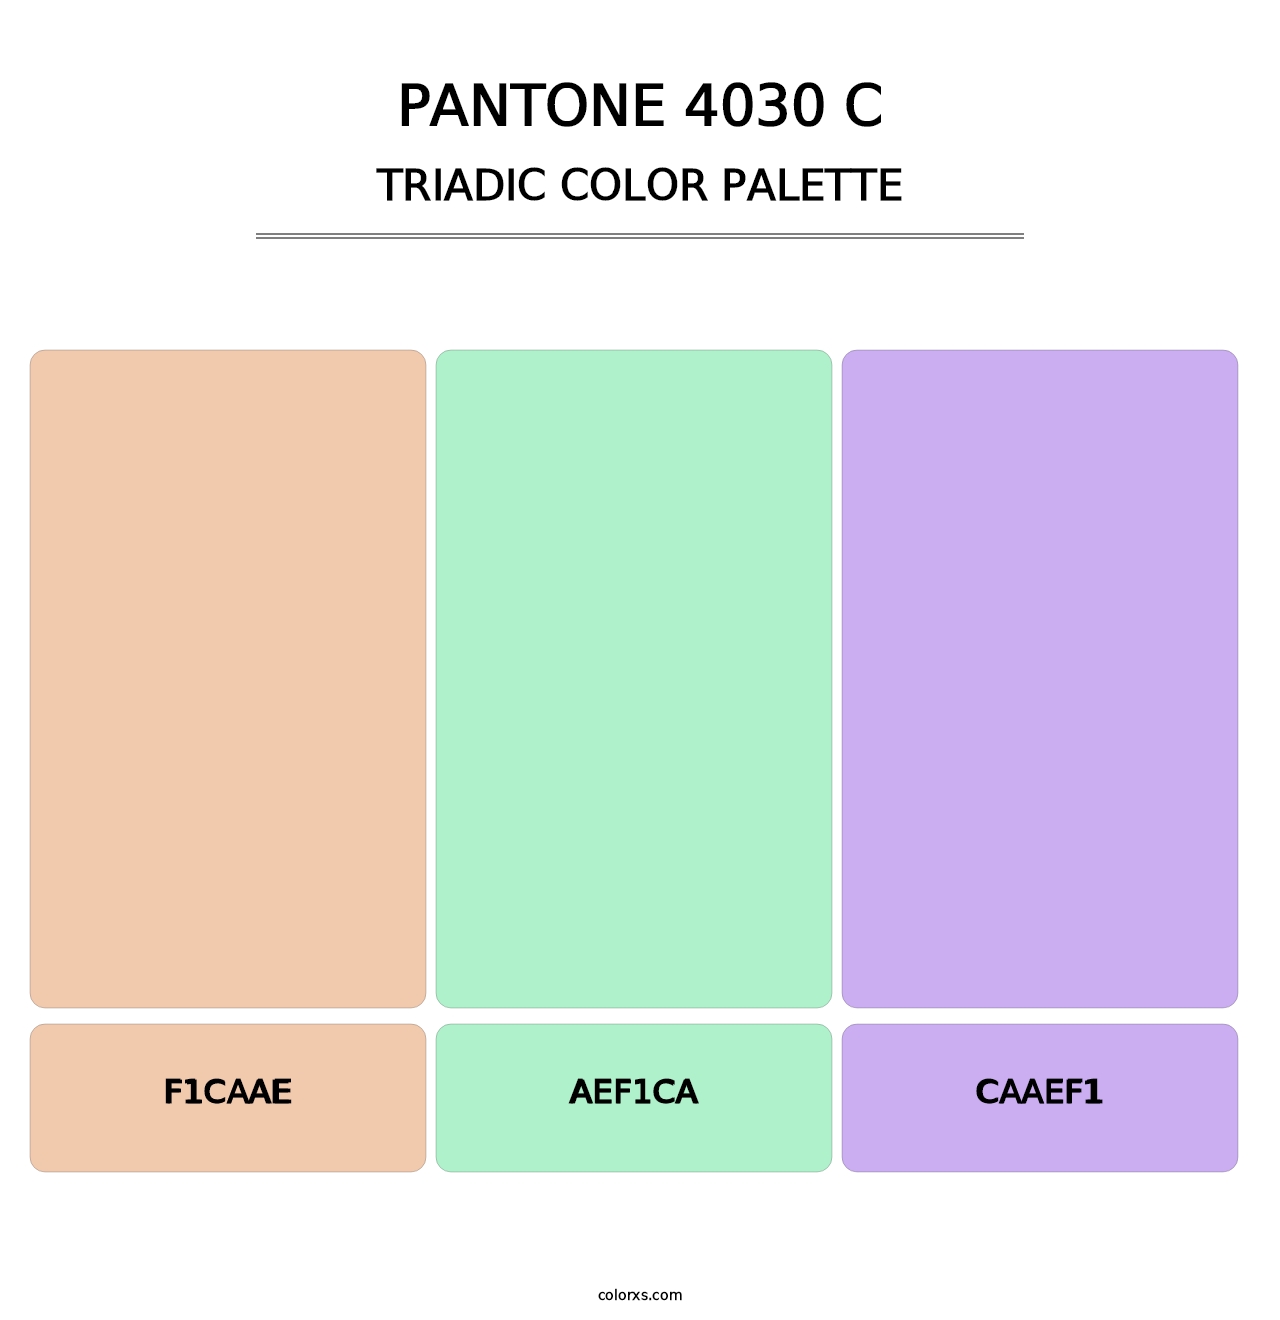 PANTONE 4030 C - Triadic Color Palette